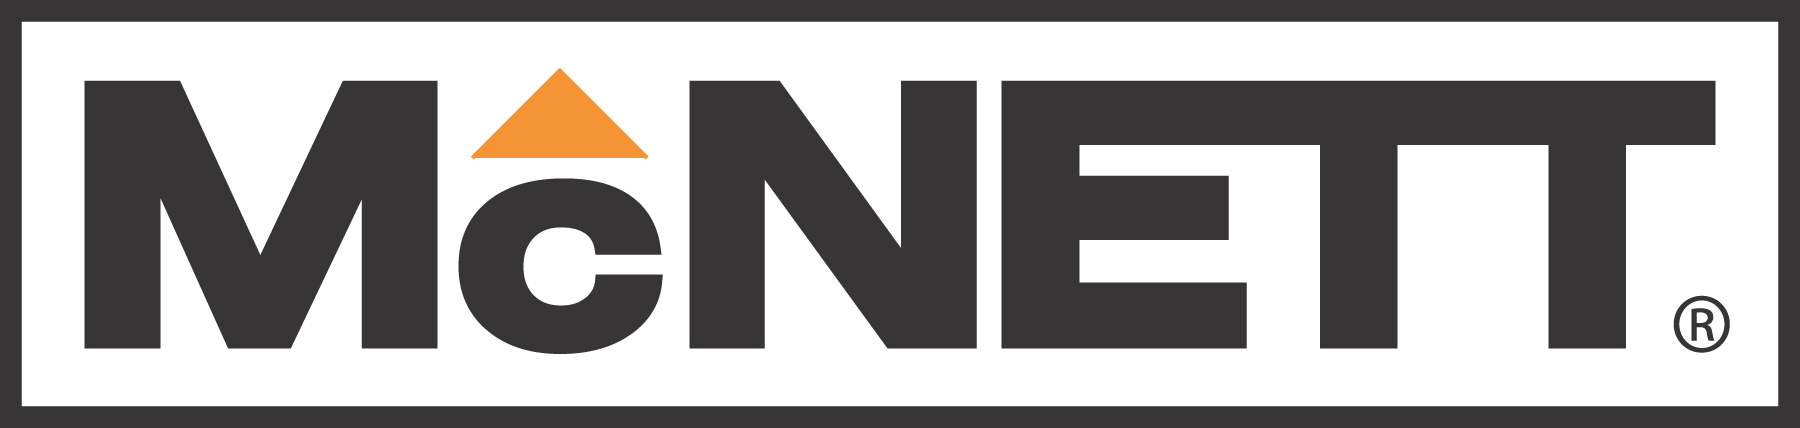 McNett-Logo-Orange.jpg